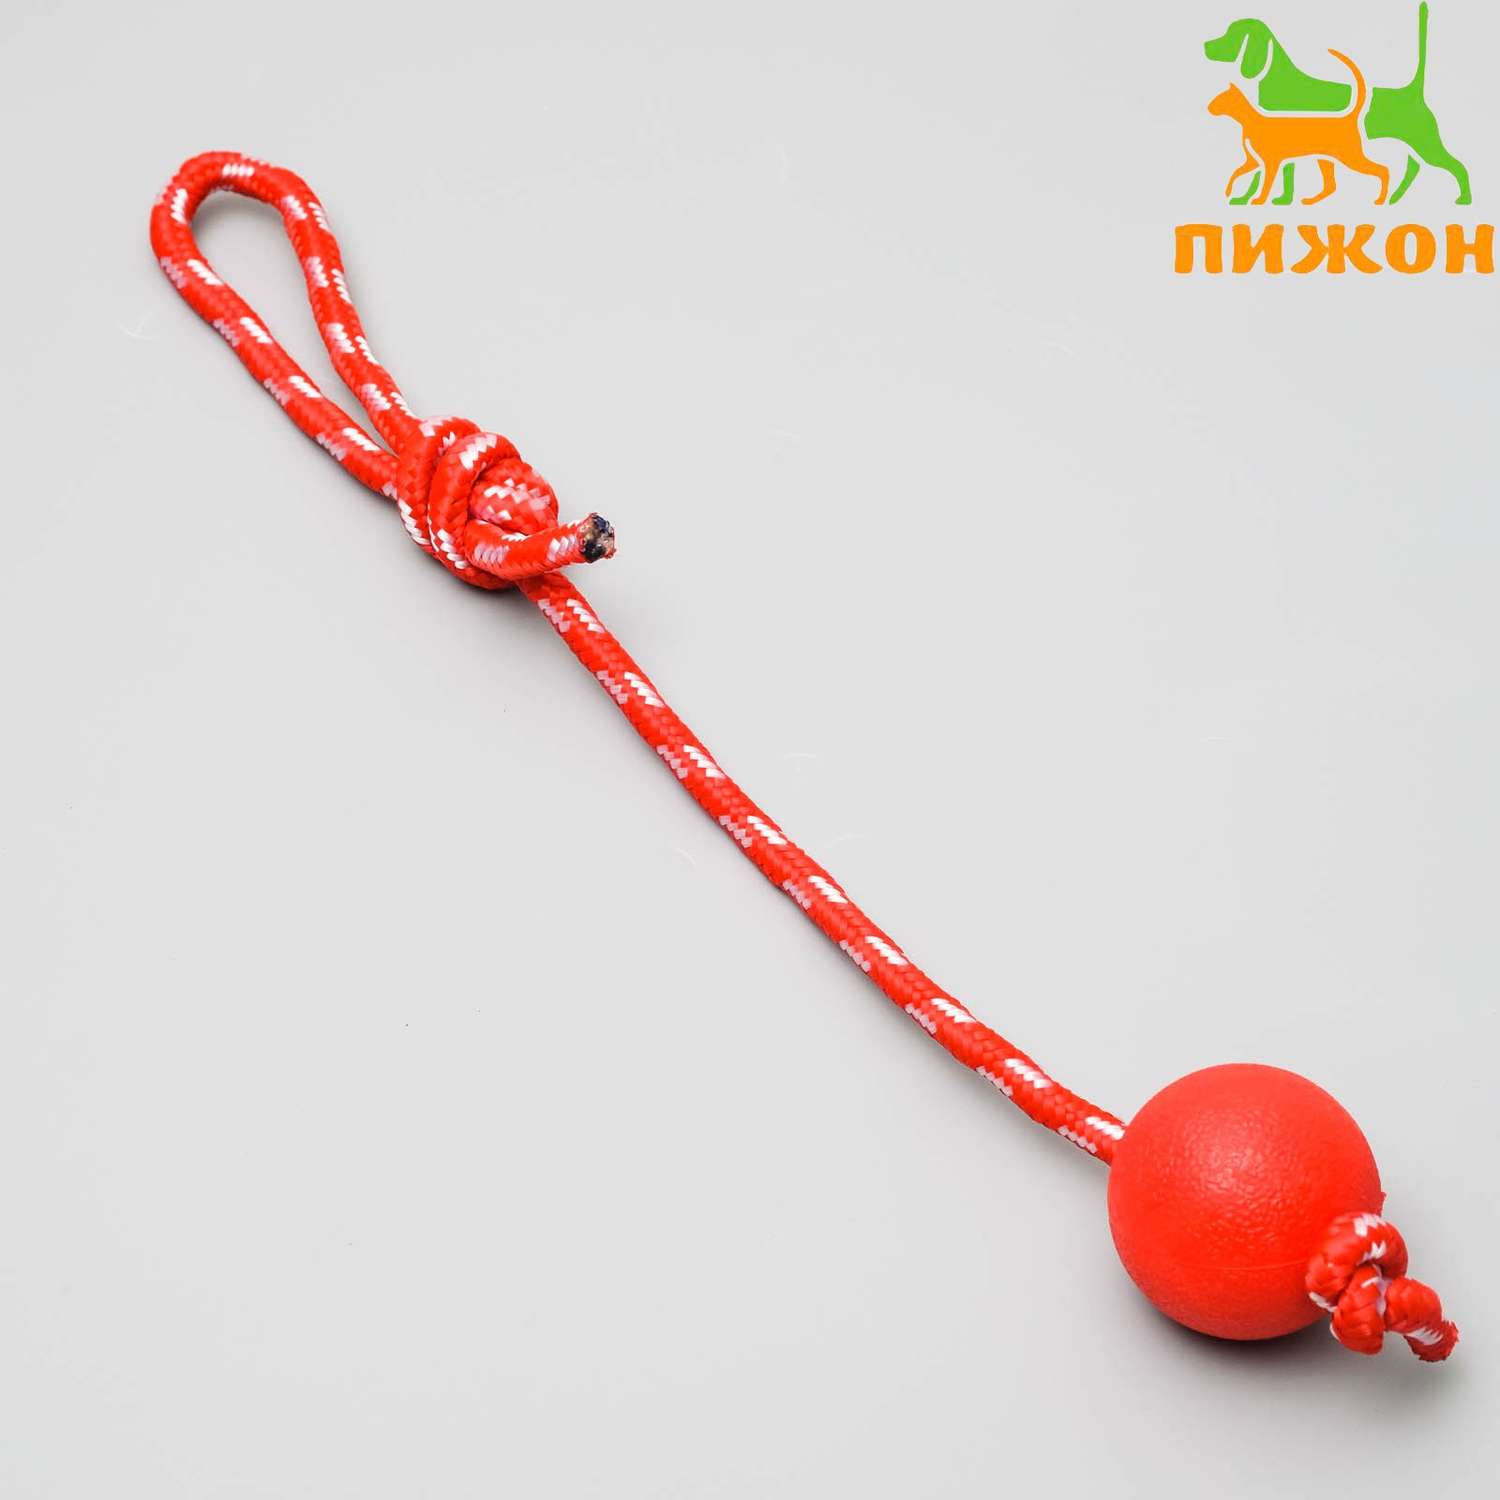 Игрушка Пижон «Шарик на веревке» 5.5 см каучук микс цветов - фото 1